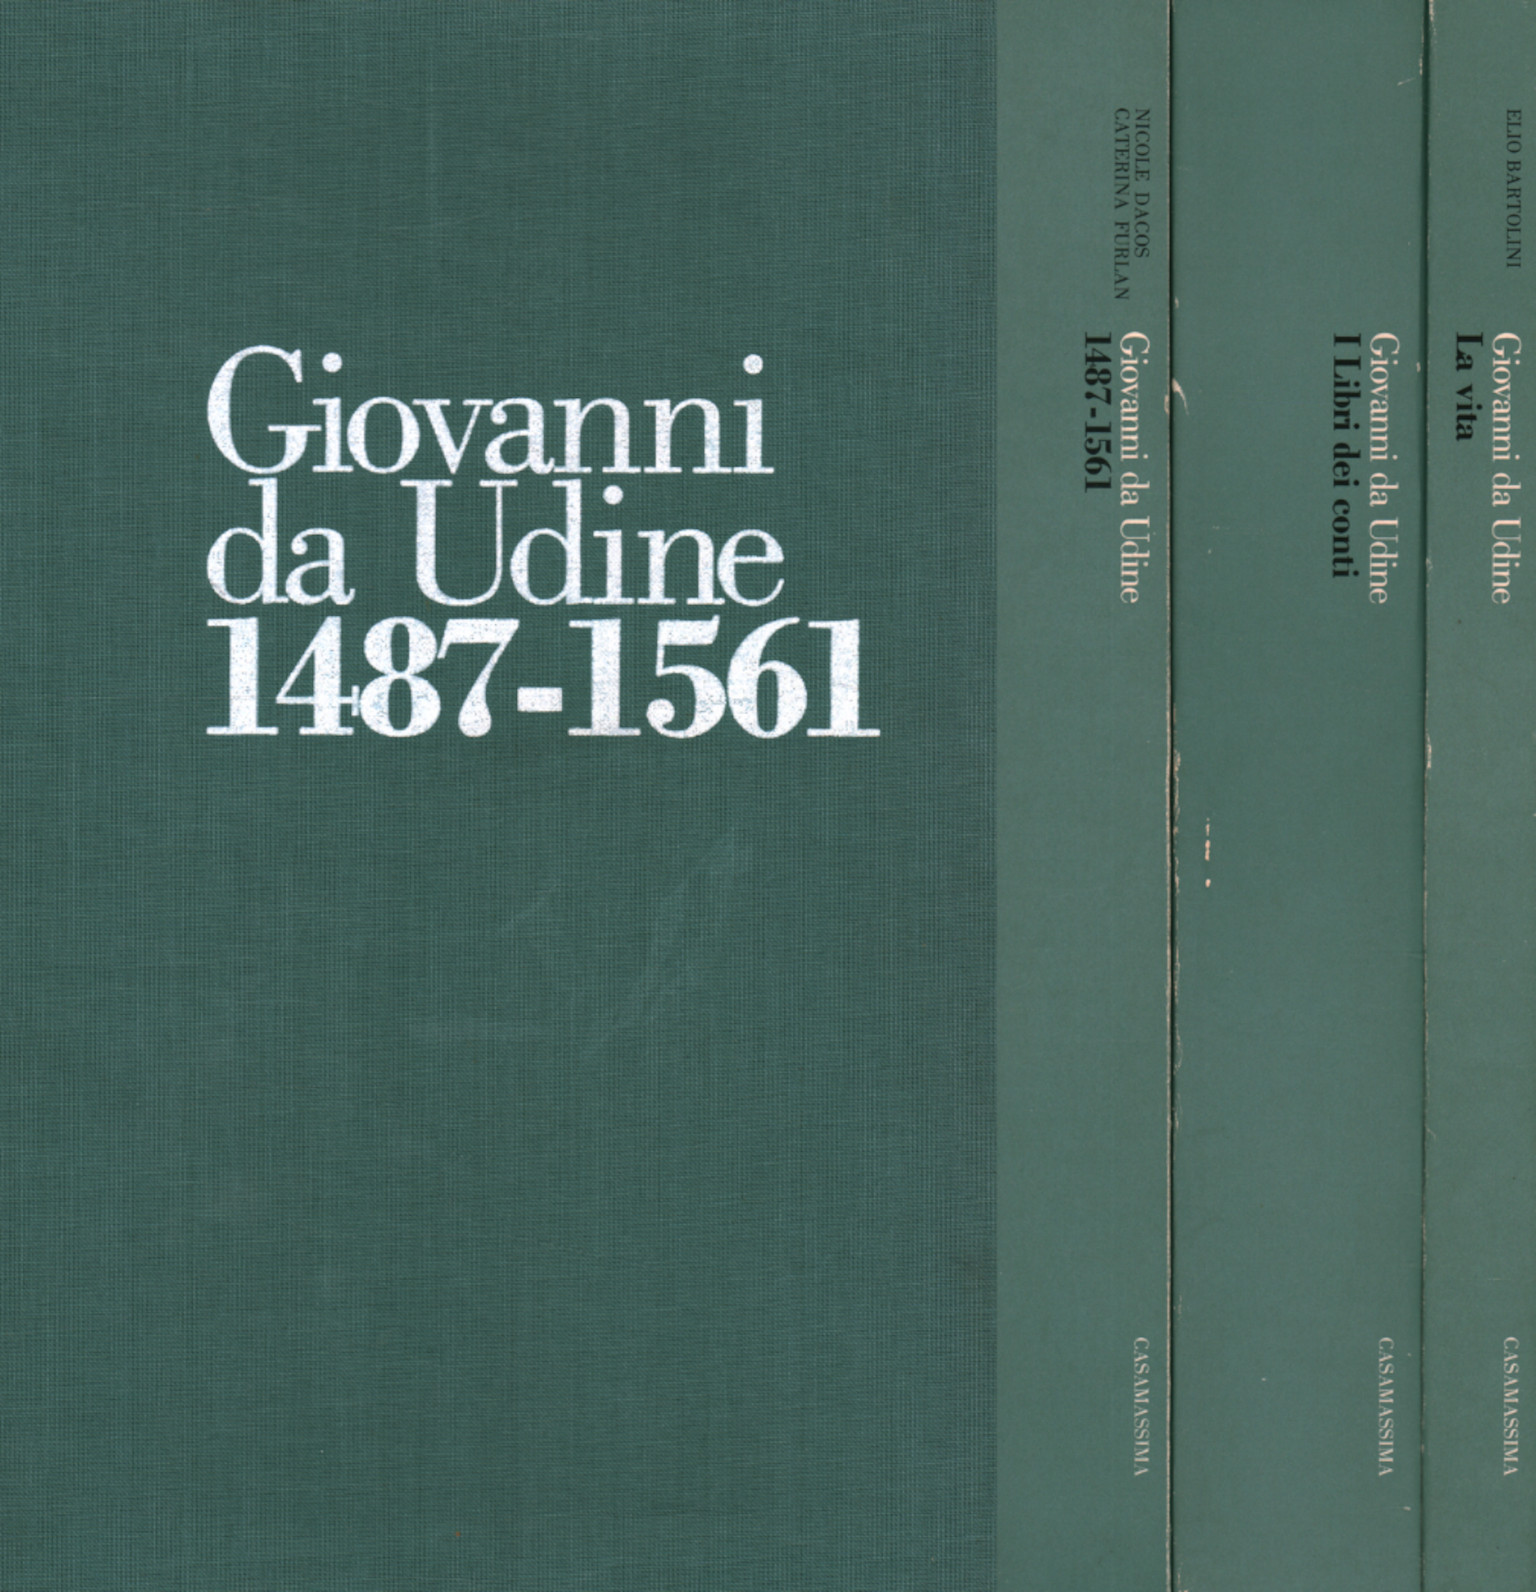 Juan de Udine (3 volúmenes)